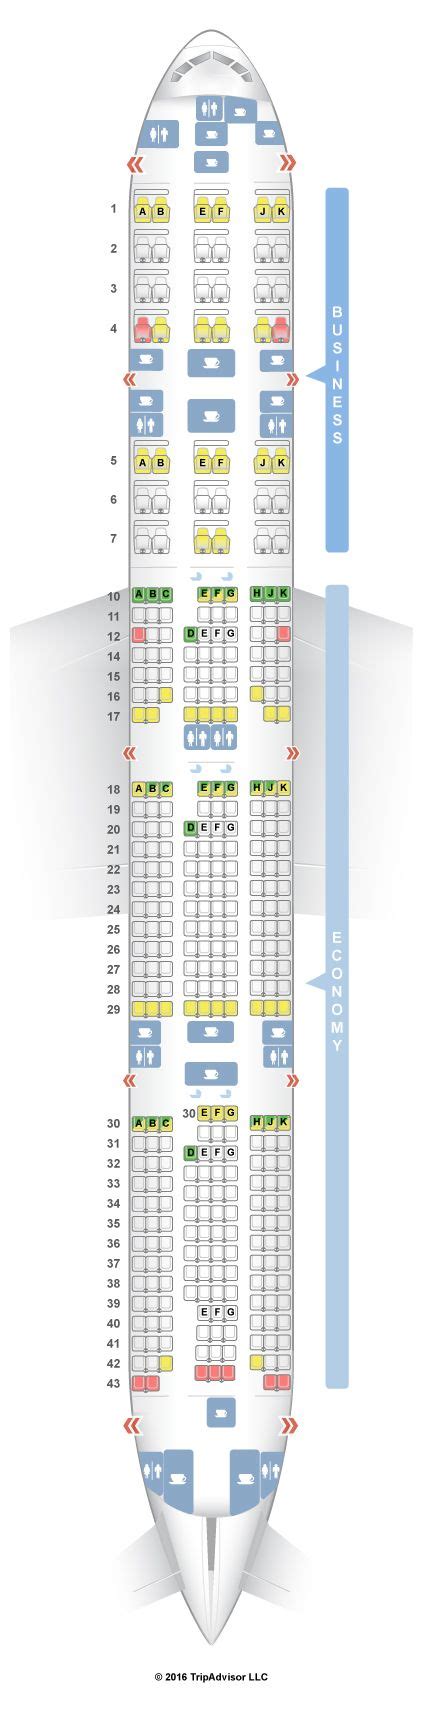 Seatguru Seat Map Qatar Airways Qatar Airways Seatguru Boeing 777